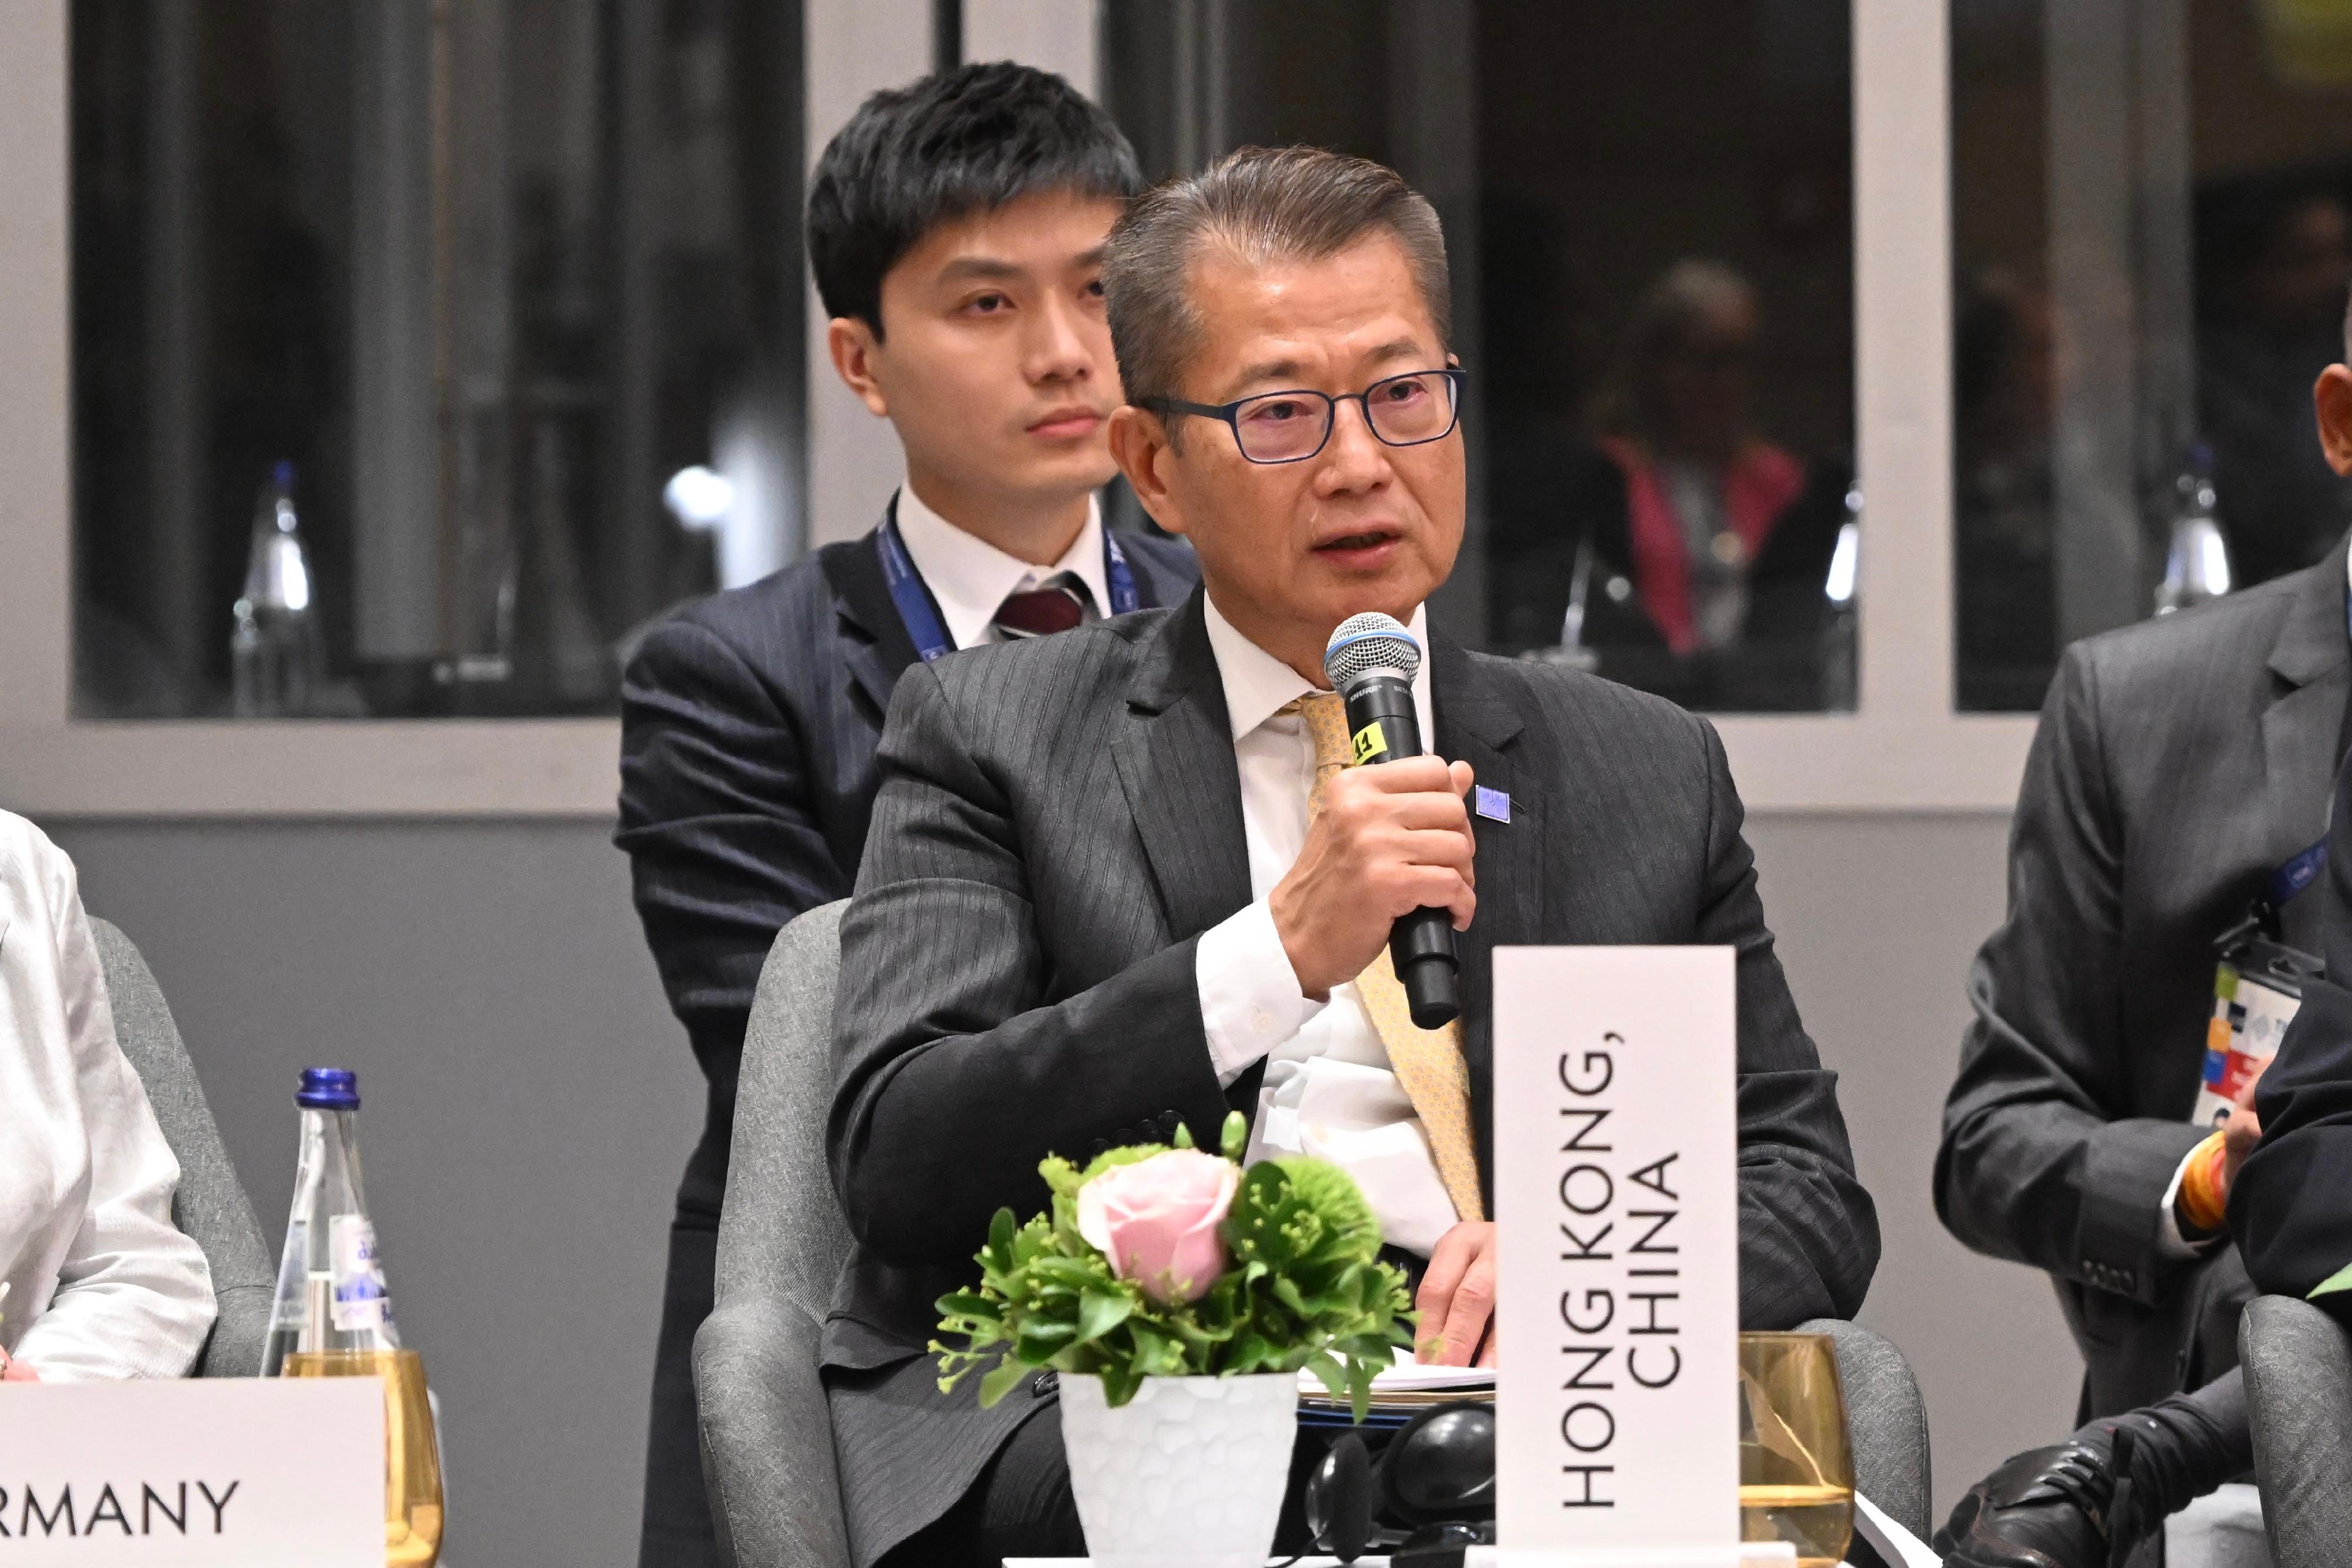 财政司司长陈茂波昨日（第比利斯时间五月四日）继续在格鲁吉亚第比利斯出席亚洲开发银行（亚开行）第五十七届理事会年会。图示陈茂波在亚开行理事会全体大会上发言。